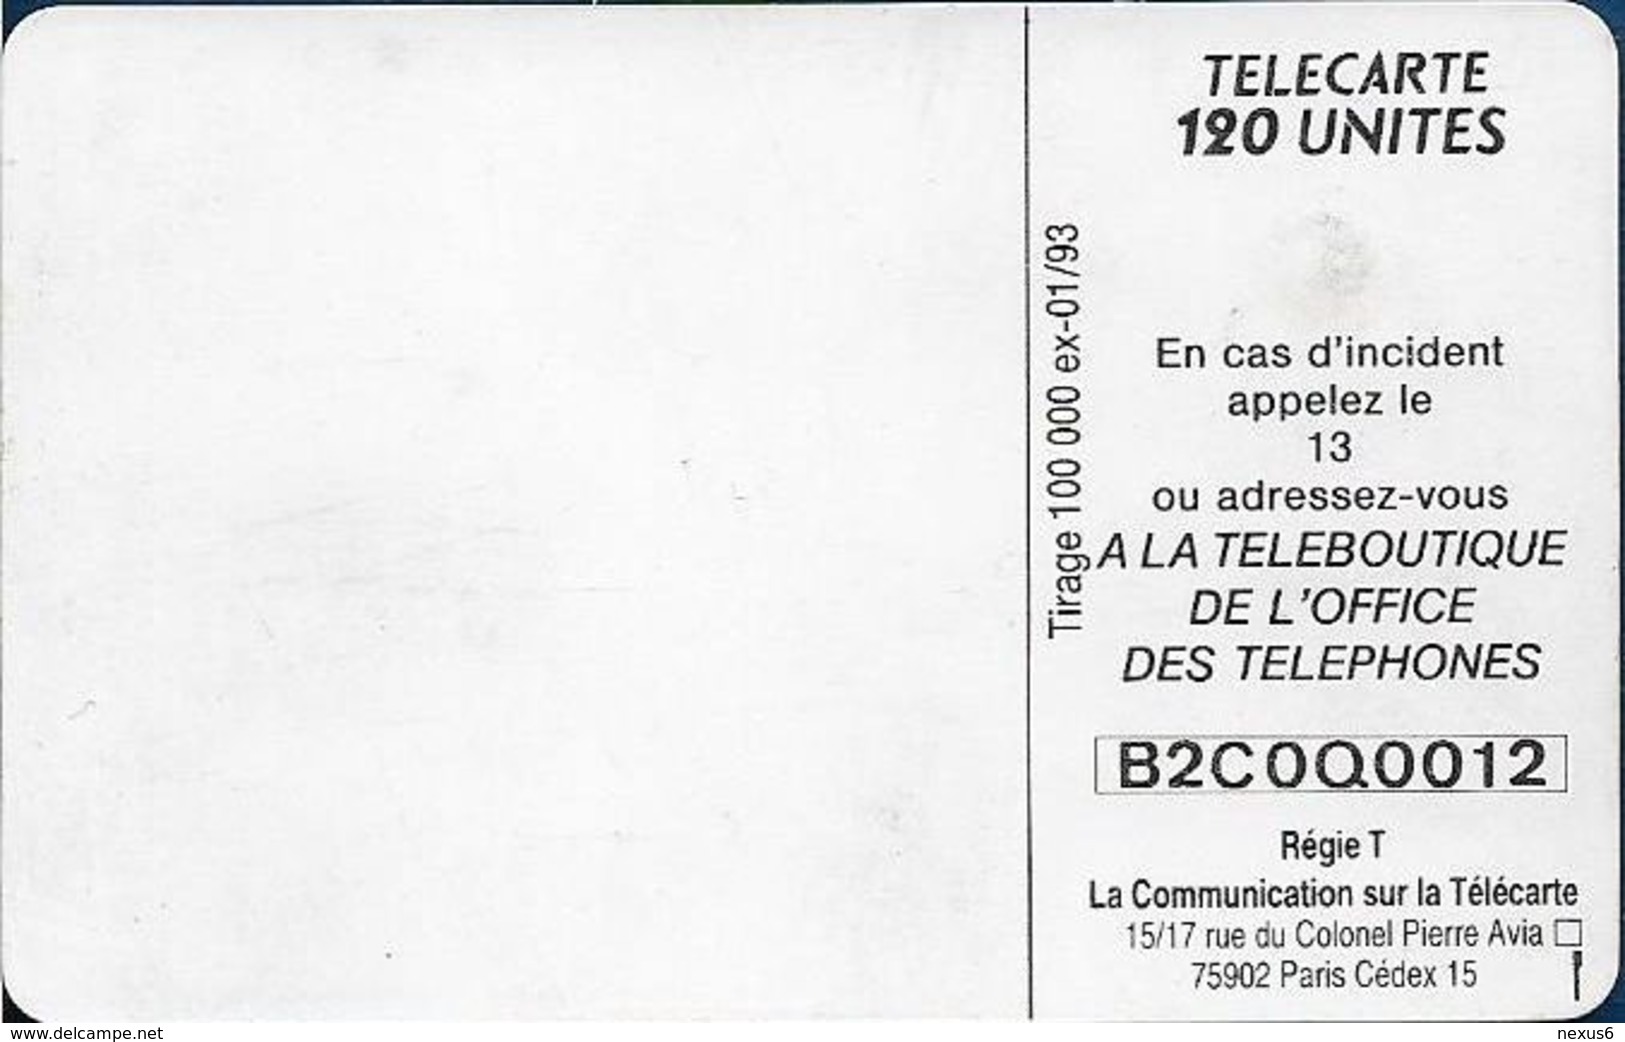 Monaco - MF49 - Prenez Le Bus - Cn. B2C0Q00012, Gem1A Symm. Black, NO Transp. Moreno, 01.1993, 120Units, 100.000ex, Used - Monaco